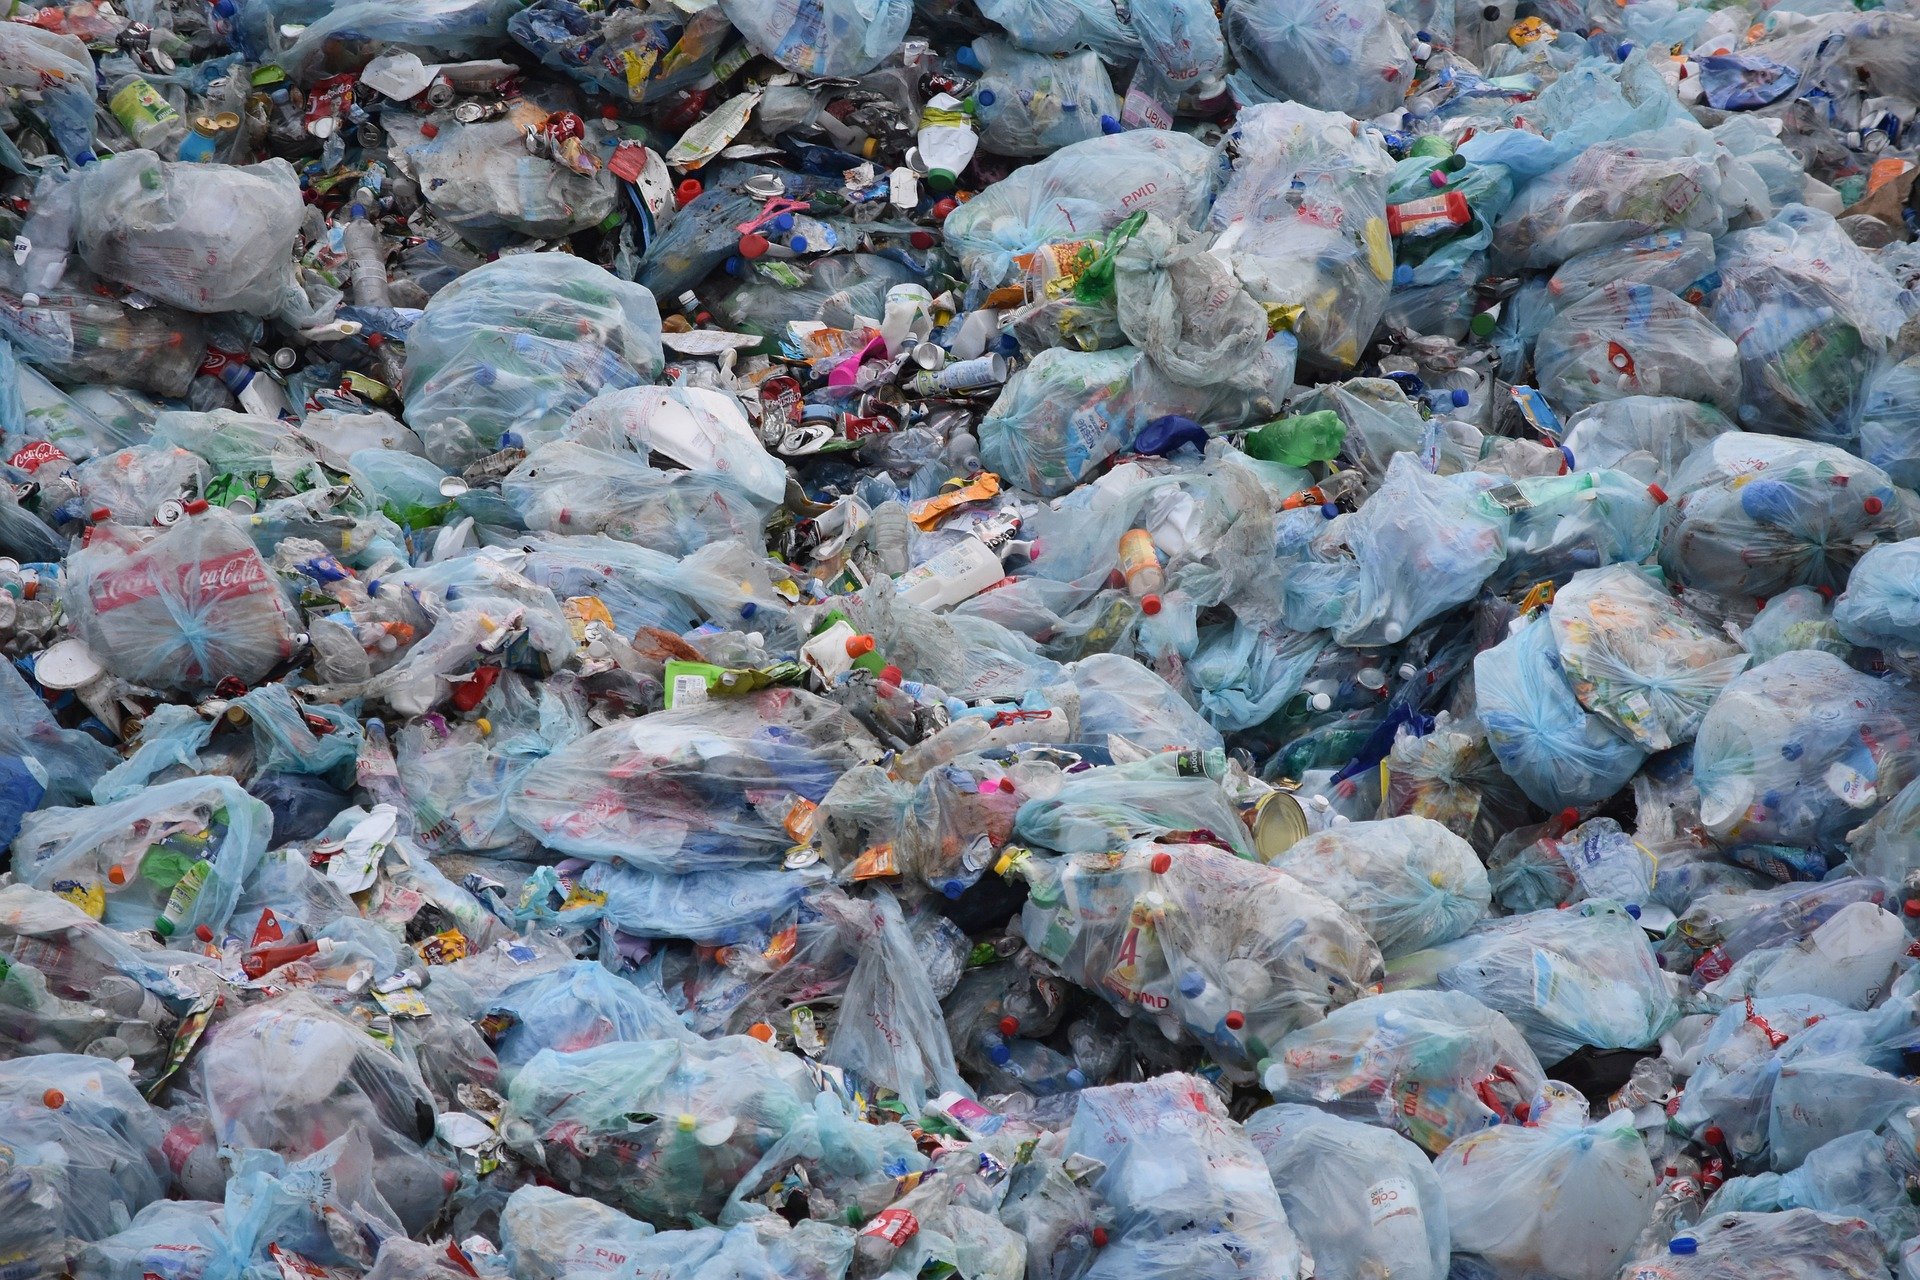 Több mint hét tonnányit újrahasznosítanak a Tiszából kiemelt hulladékból